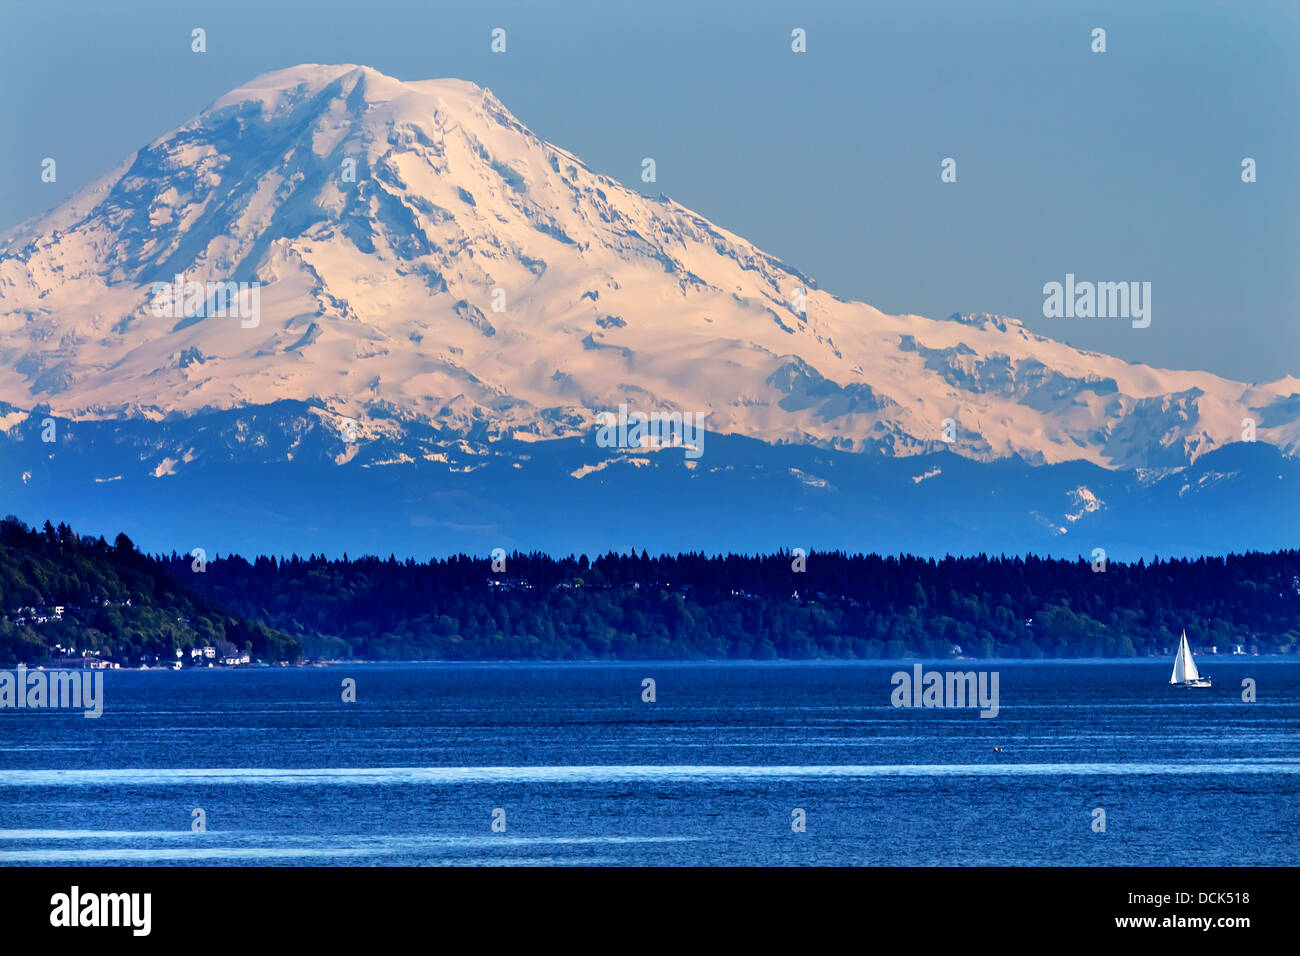 Le mont Rainier Puget Sound North Seattle Snow Mountain voilier l'État de Washington au nord-ouest du Pacifique Banque D'Images